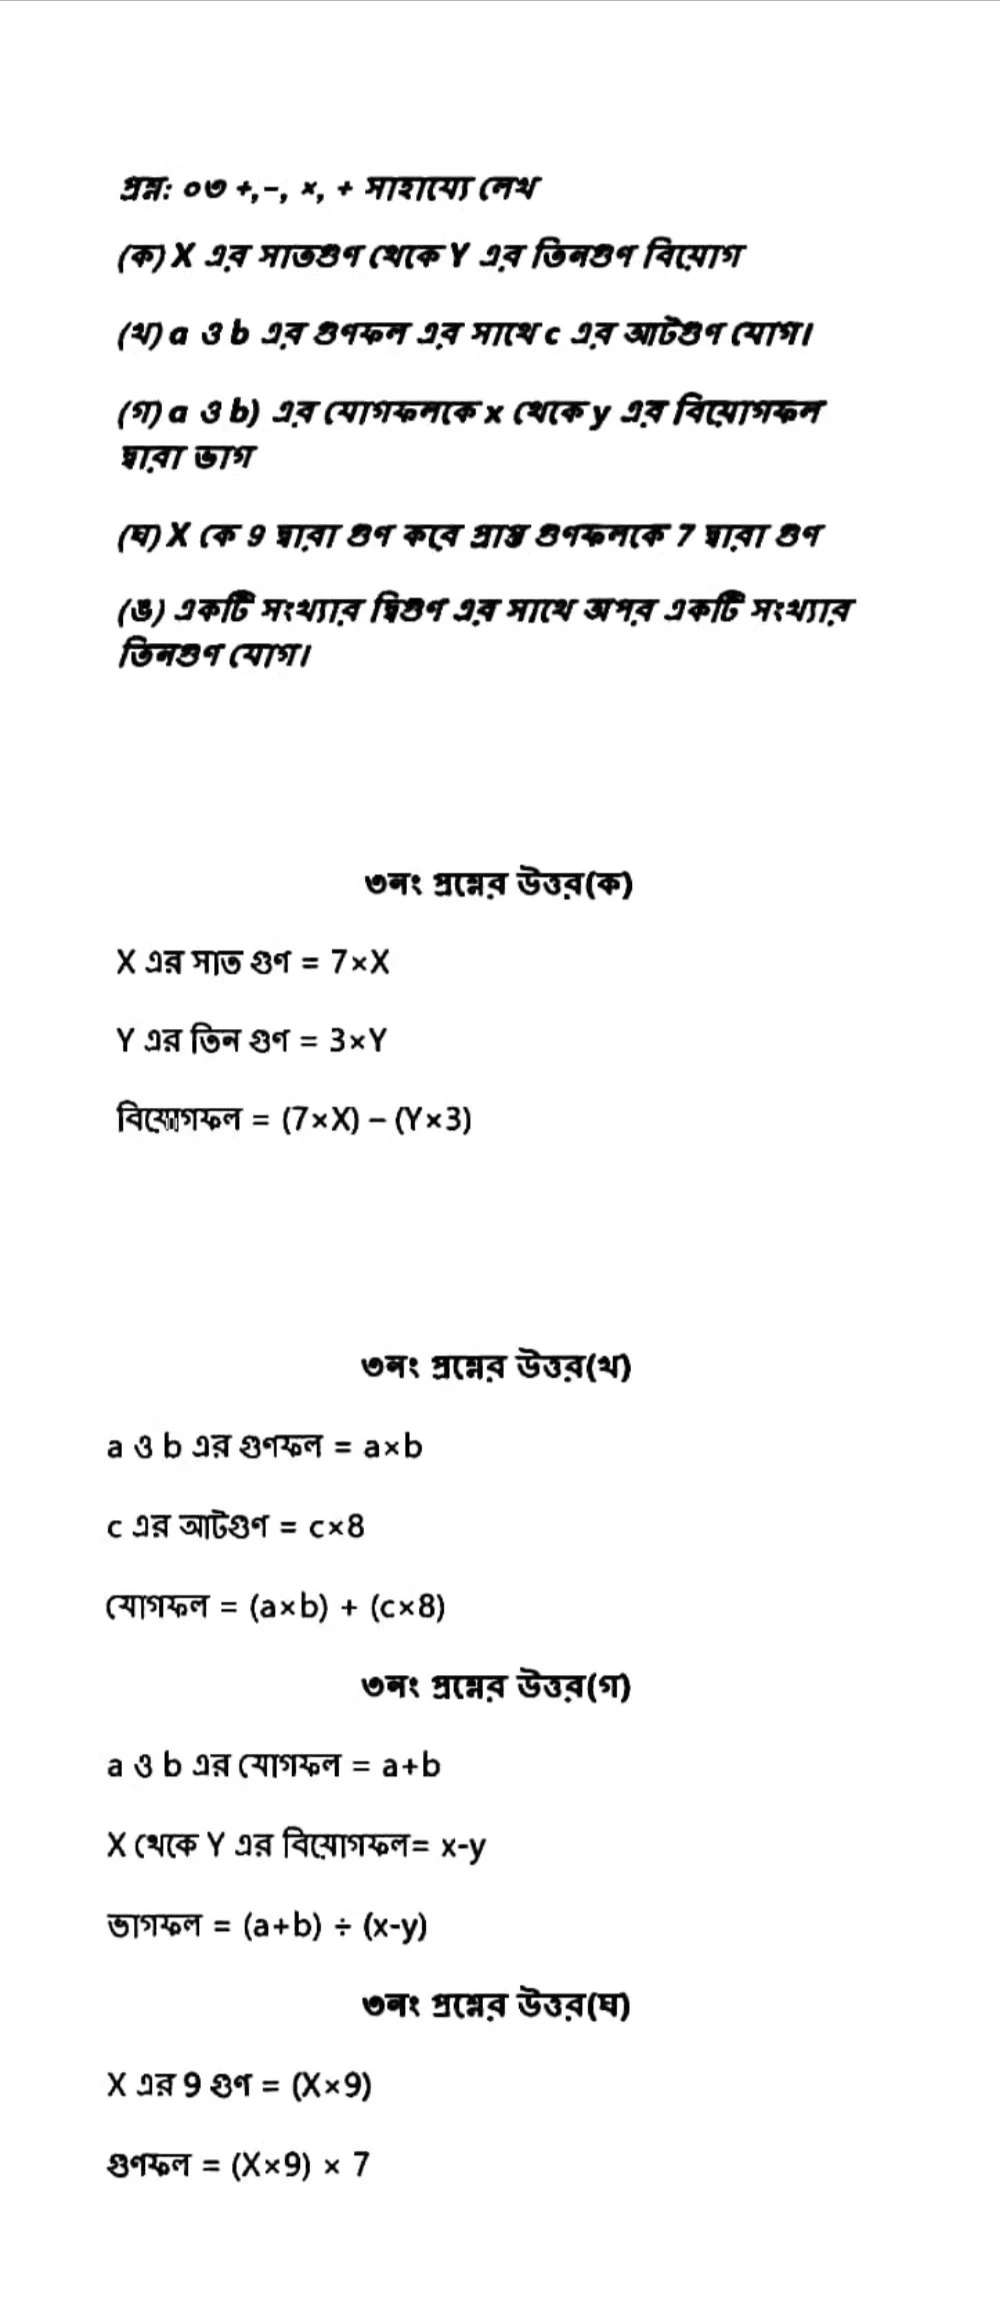 ষষ্ঠ শ্রেণীর ৫ম সপ্তাহের গণিত এসাইনমেন্ট প্রশ্ন ২০২০ | Class 6, 5th Week Math Assignment Solution